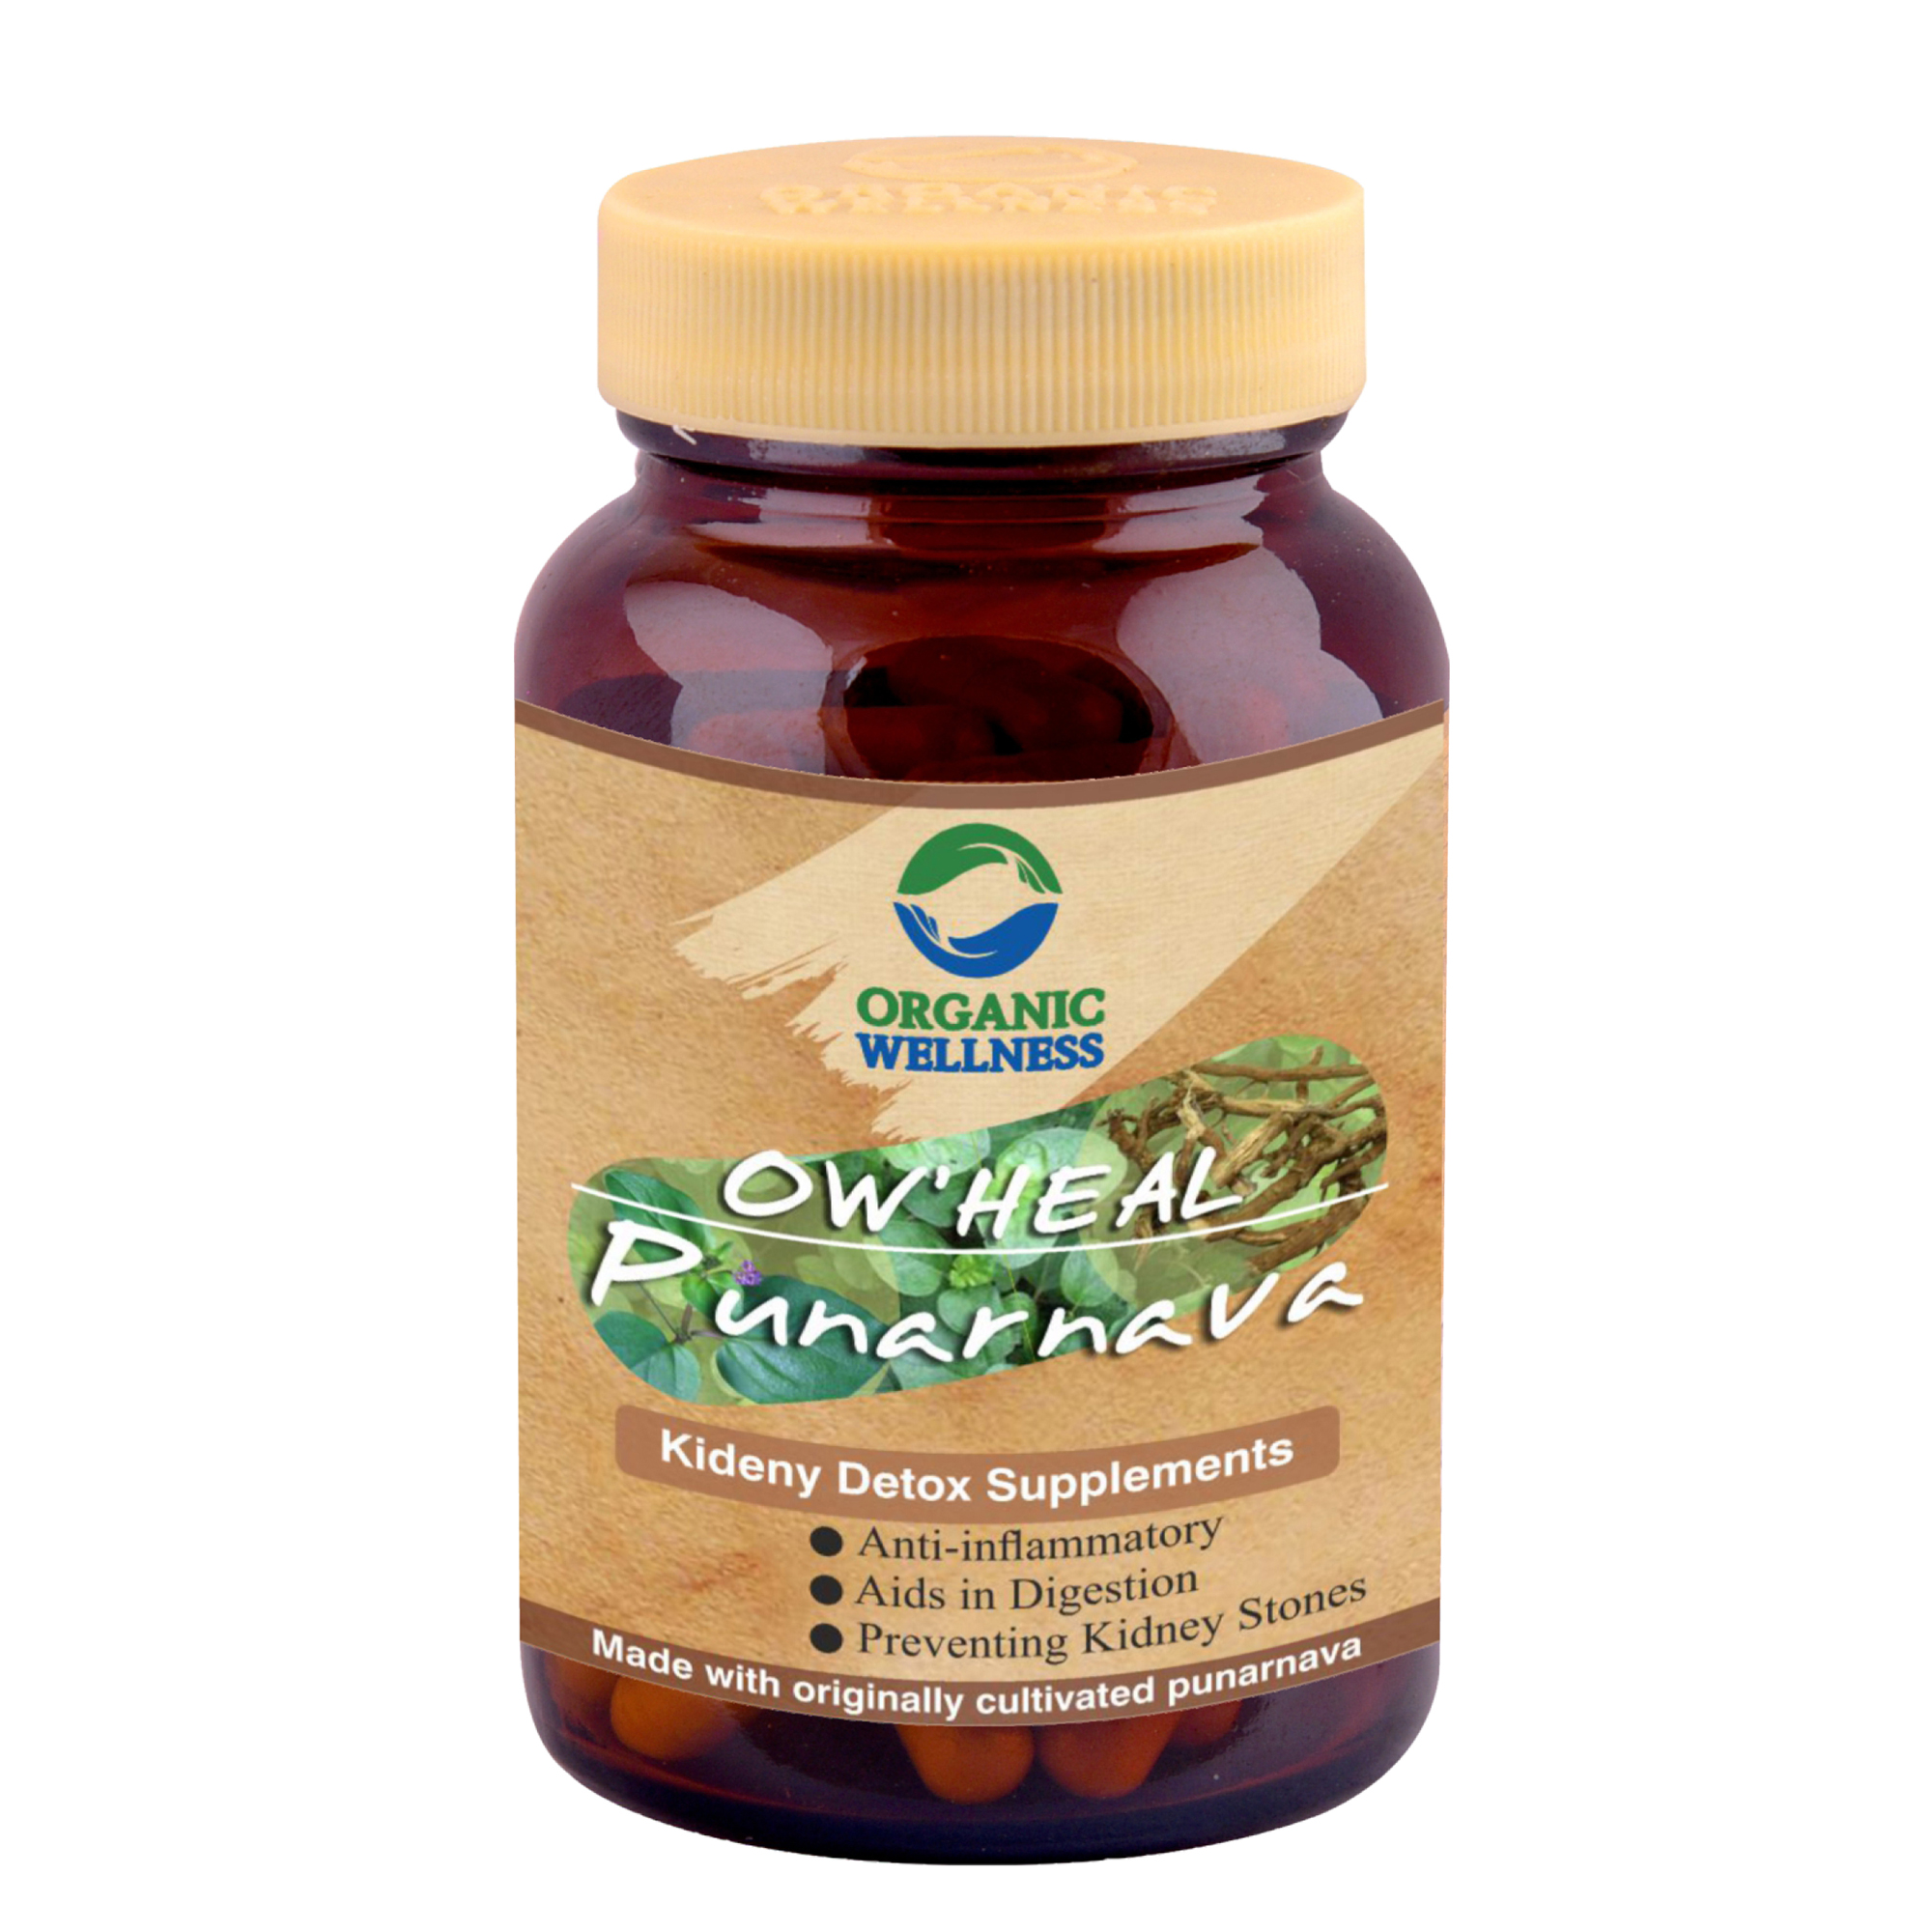 Organic Wellness Punarnava Kidney Detox 90 Capsules Bottle